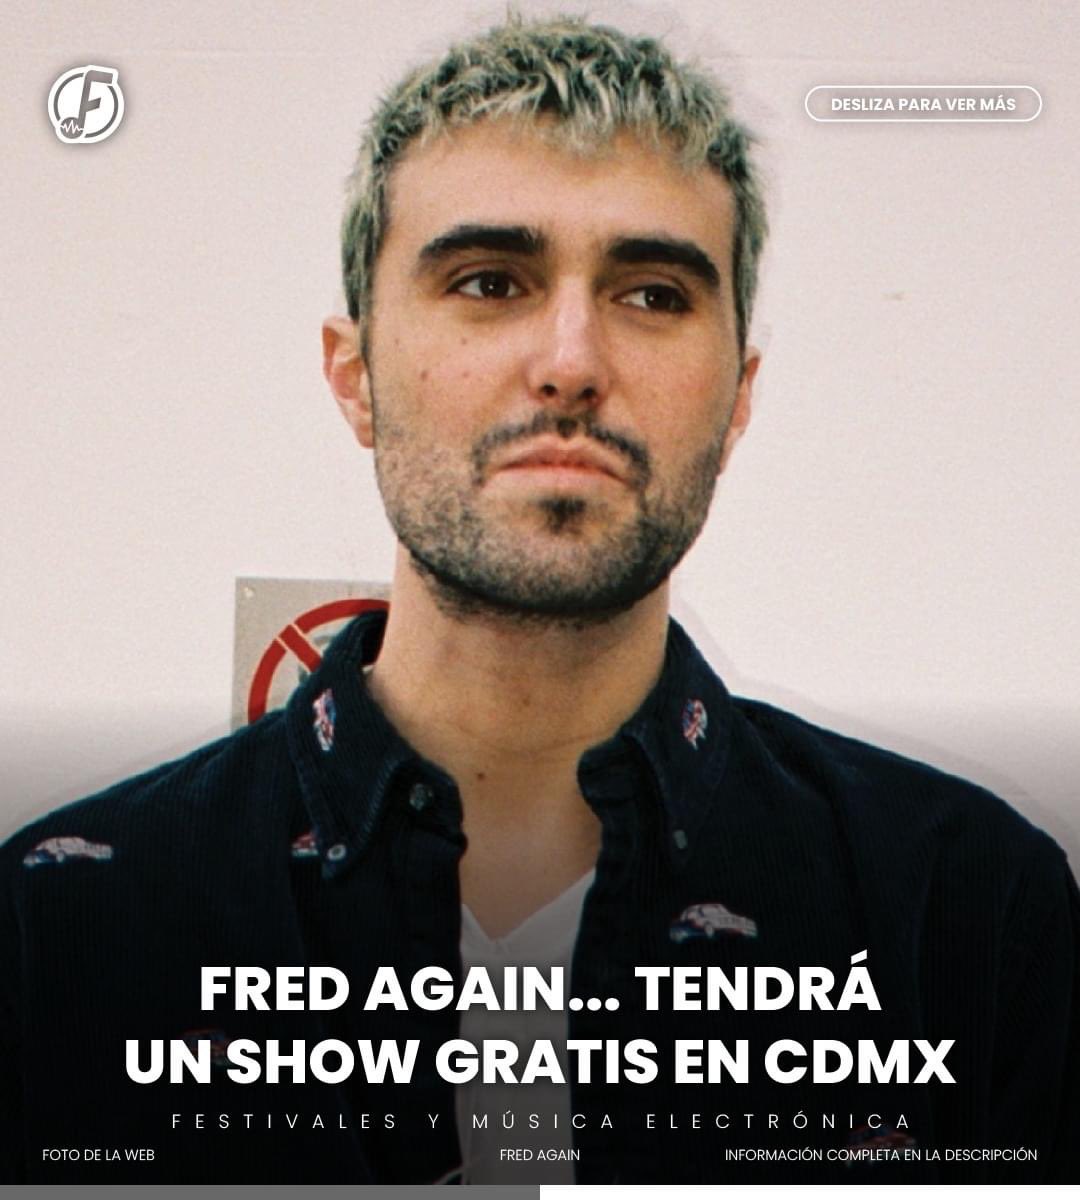 CONFIRMADO! Fred again dara un show gratis en la Ciudad de México el Domingo.🤯

#fredagain